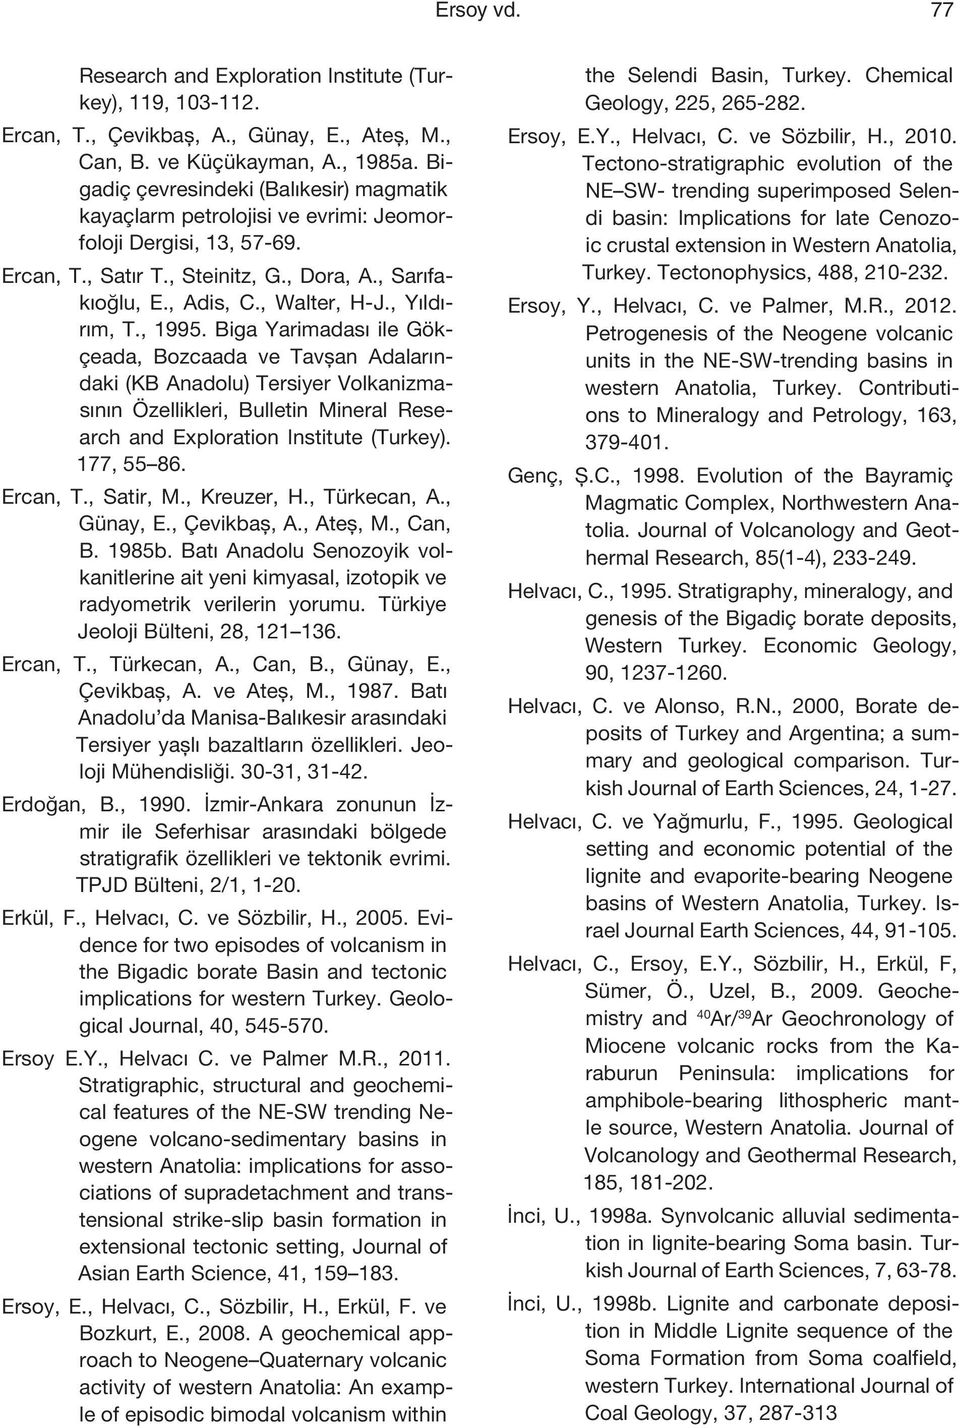 , Yıldırım, T., 1995. Biga Yarimadası ile Gökçeada, Bozcaada ve Tavşan Adalarındaki (KB Anadolu) Tersiyer Volkanizmasının Özellikleri, Bulletin Mineral Research and Exploration Institute (Turkey).